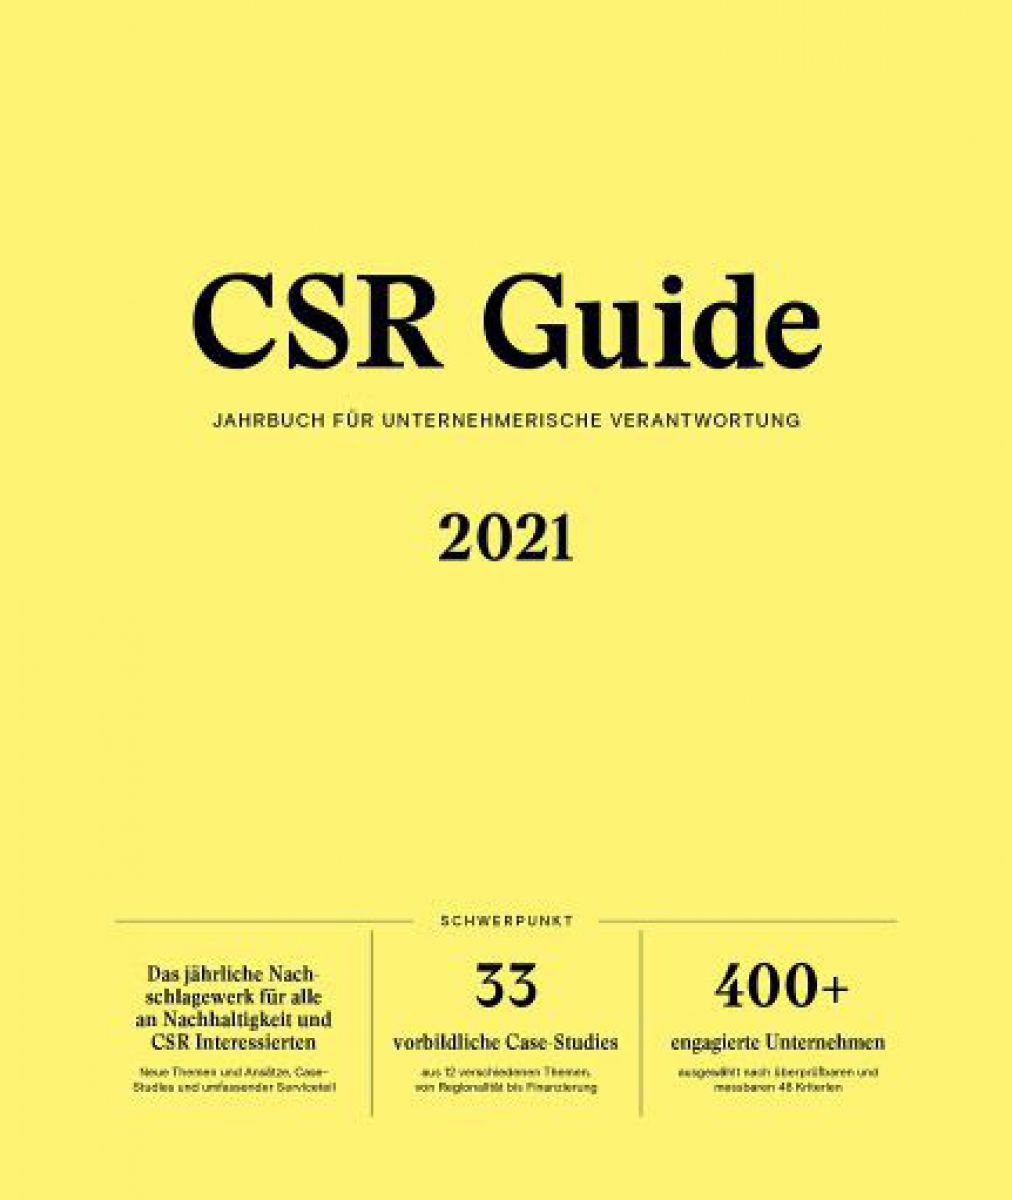 cover-csr-guide-2021-03: Schwarze Schrift auf gelbem Grund